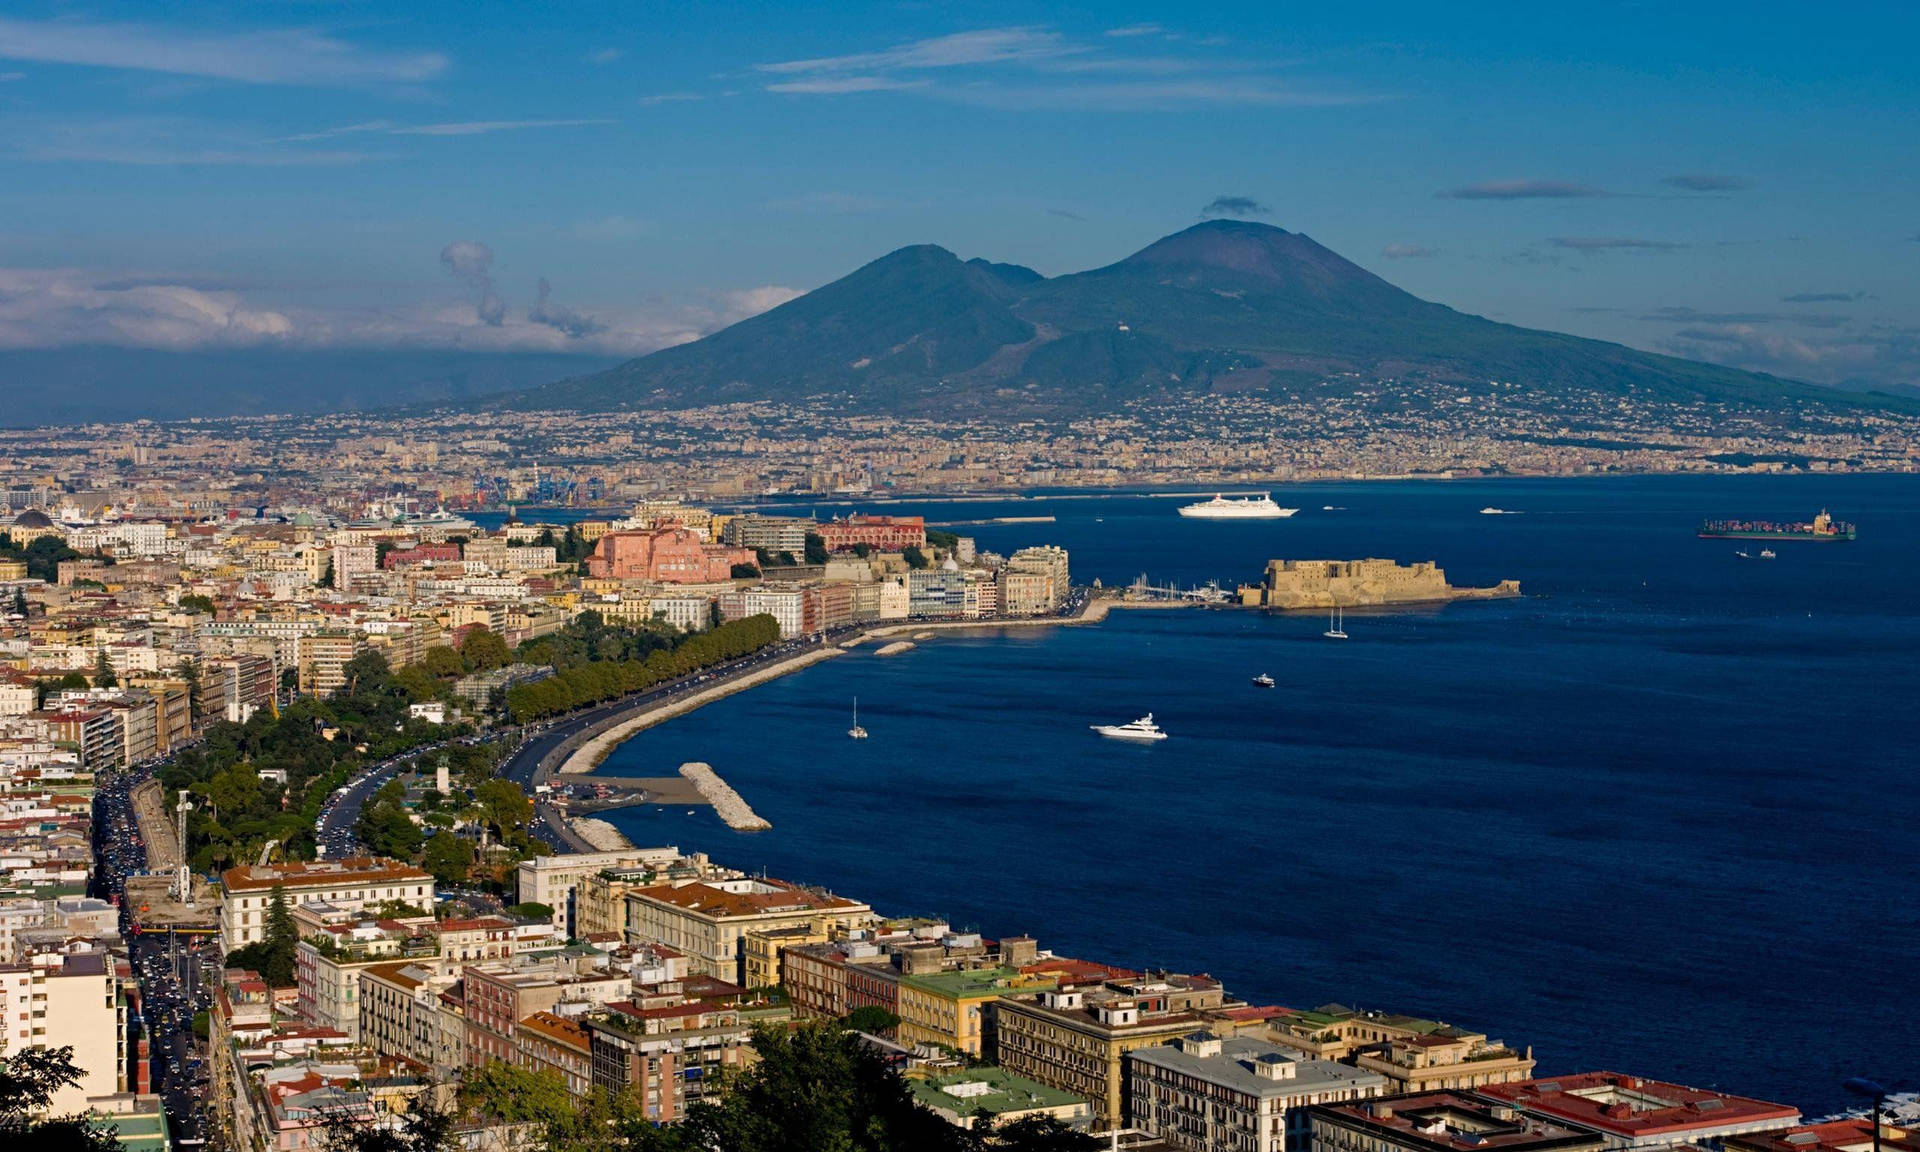 Naples Mount Vesuvius Aerial View Background